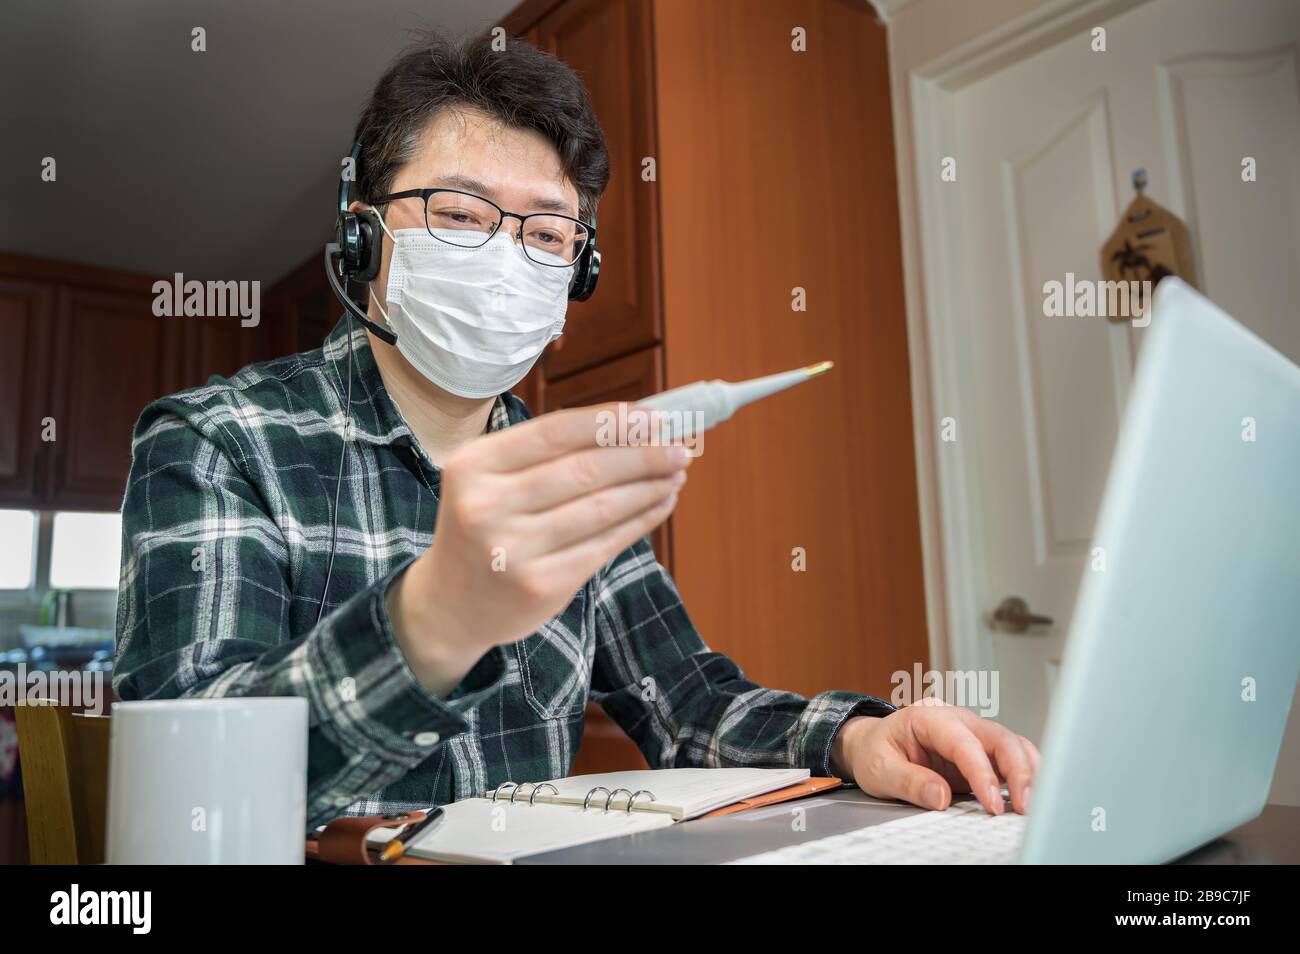 Ein asiatischer Mann, der aufgrund einer massiven Pandemie selbst isoliert und von zu Hause aus arbeitet. Ein Mann, der ein Thermometer hält, um die Körpertemperatur zu messen. Stockfoto